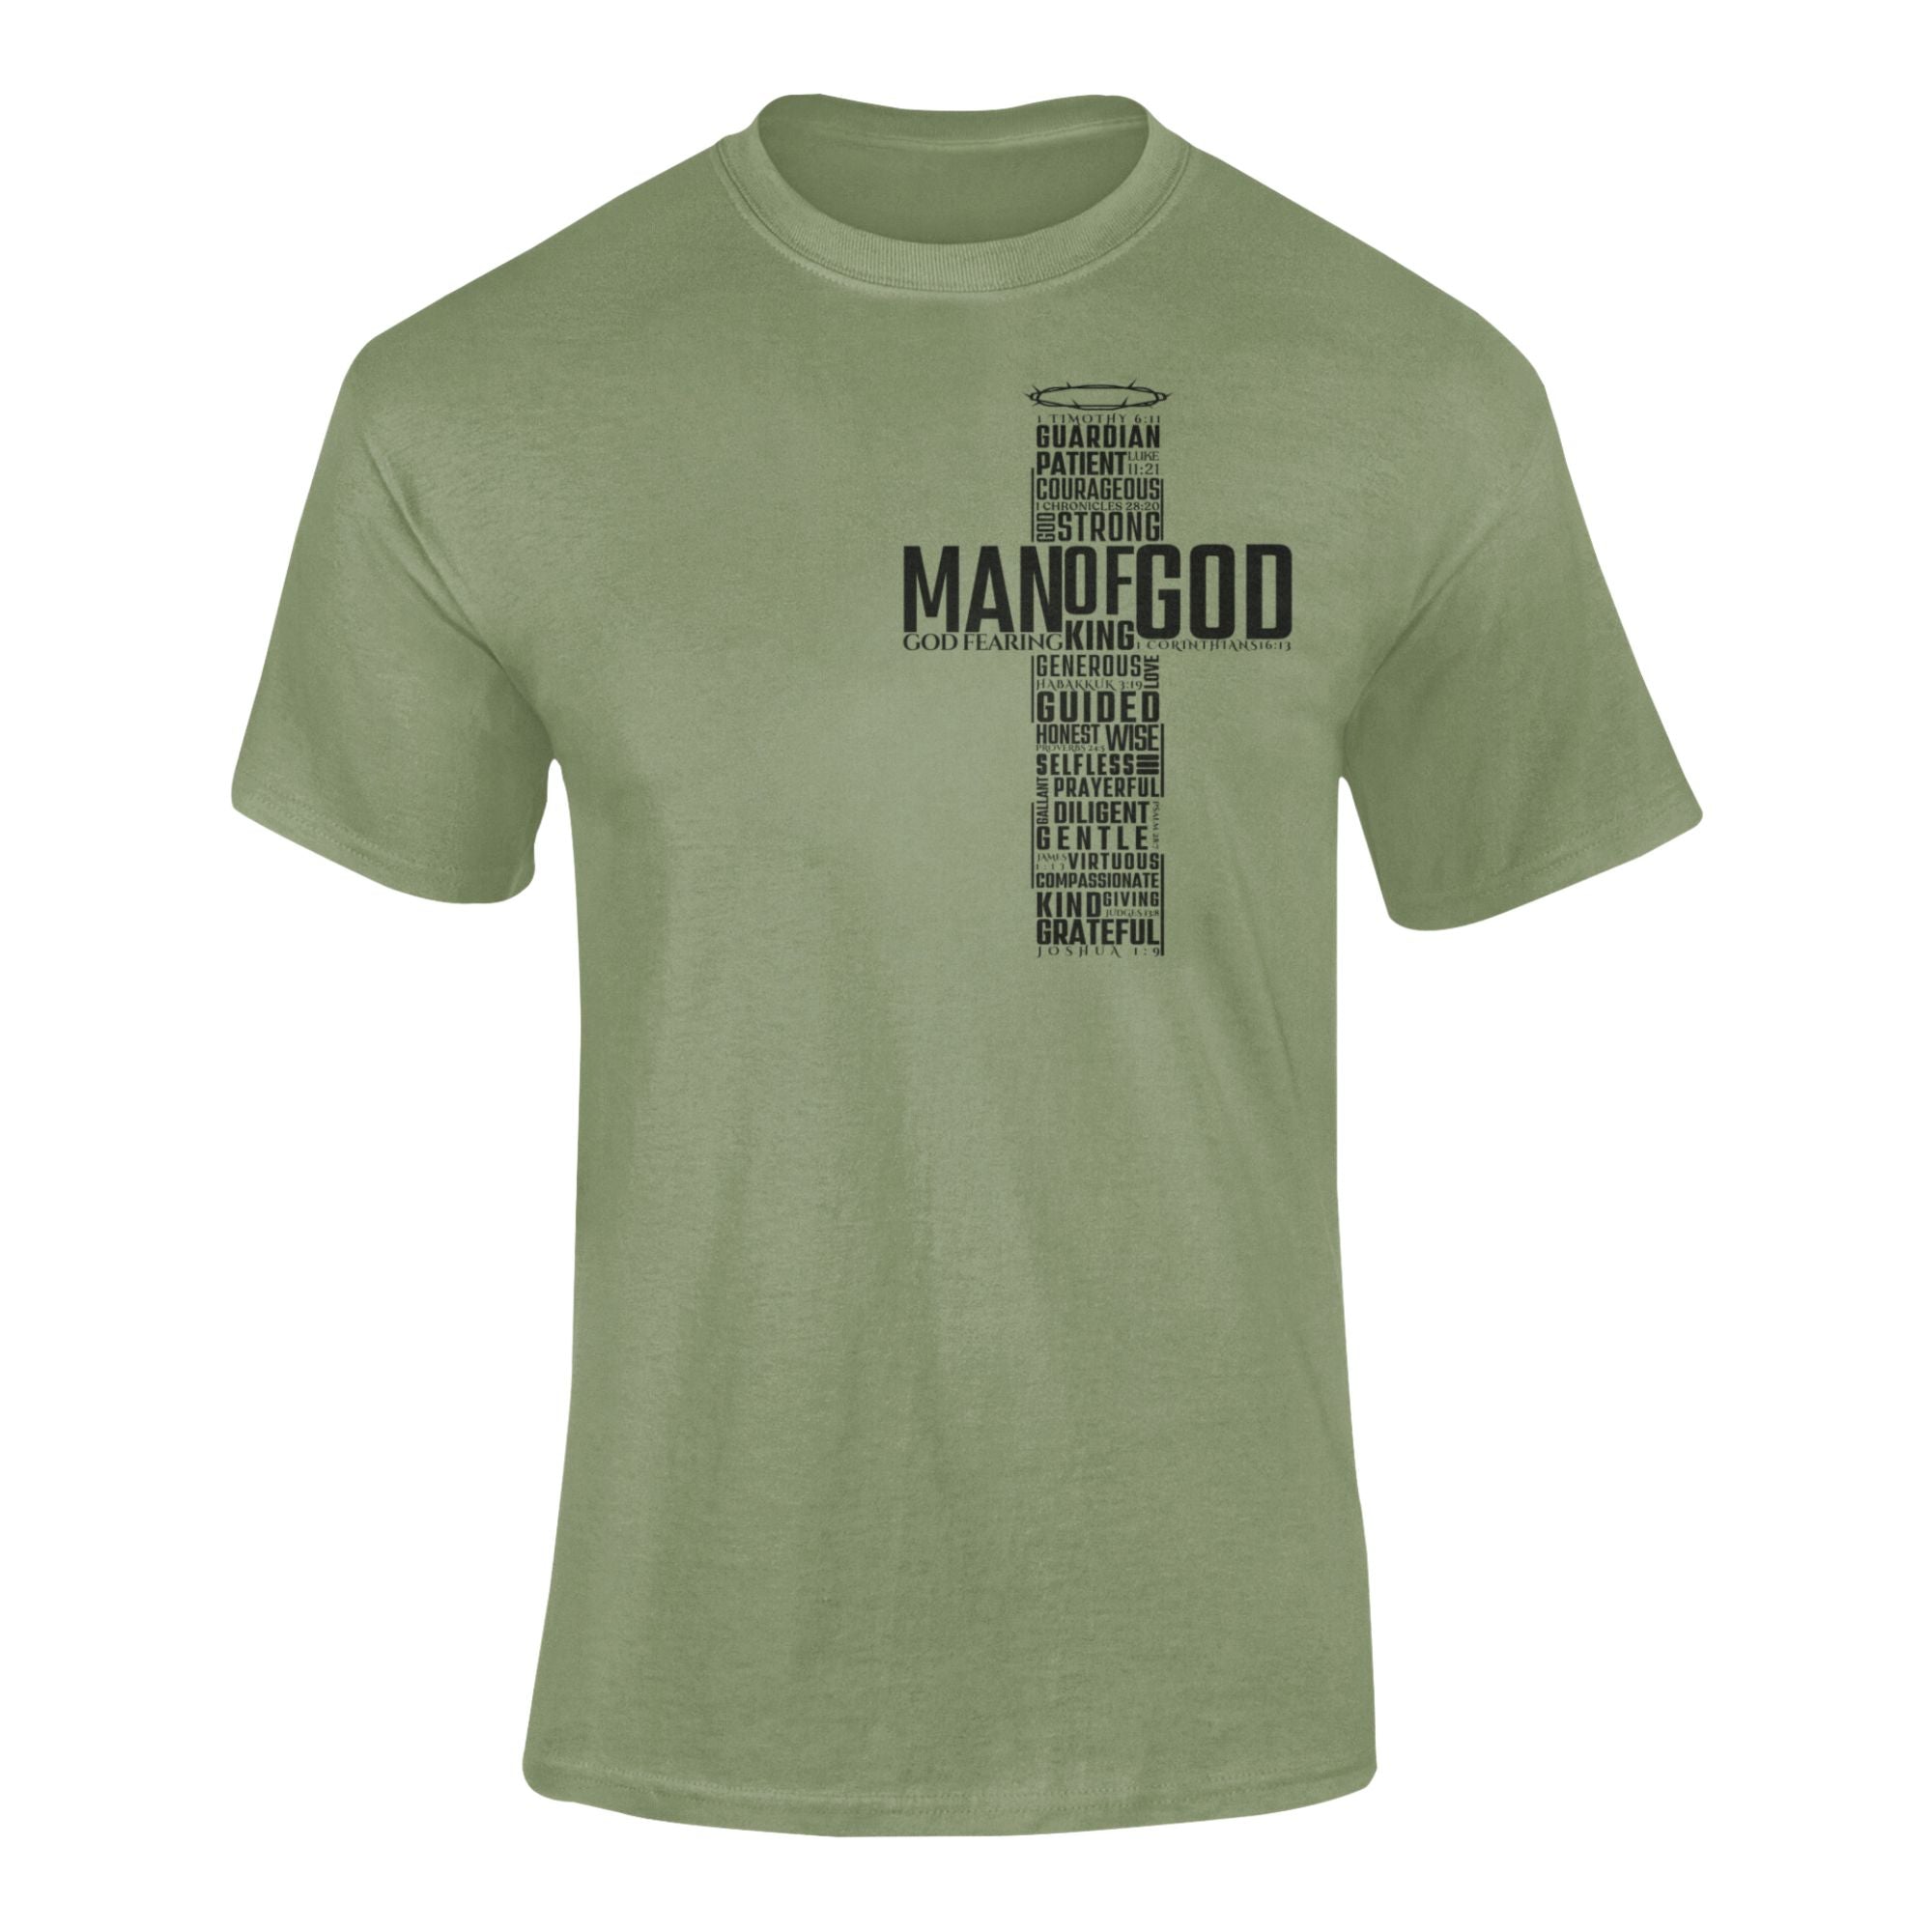 T.D. Jakes – Man of God Cross T-Shirt – Olive Green – Left Chest Cross